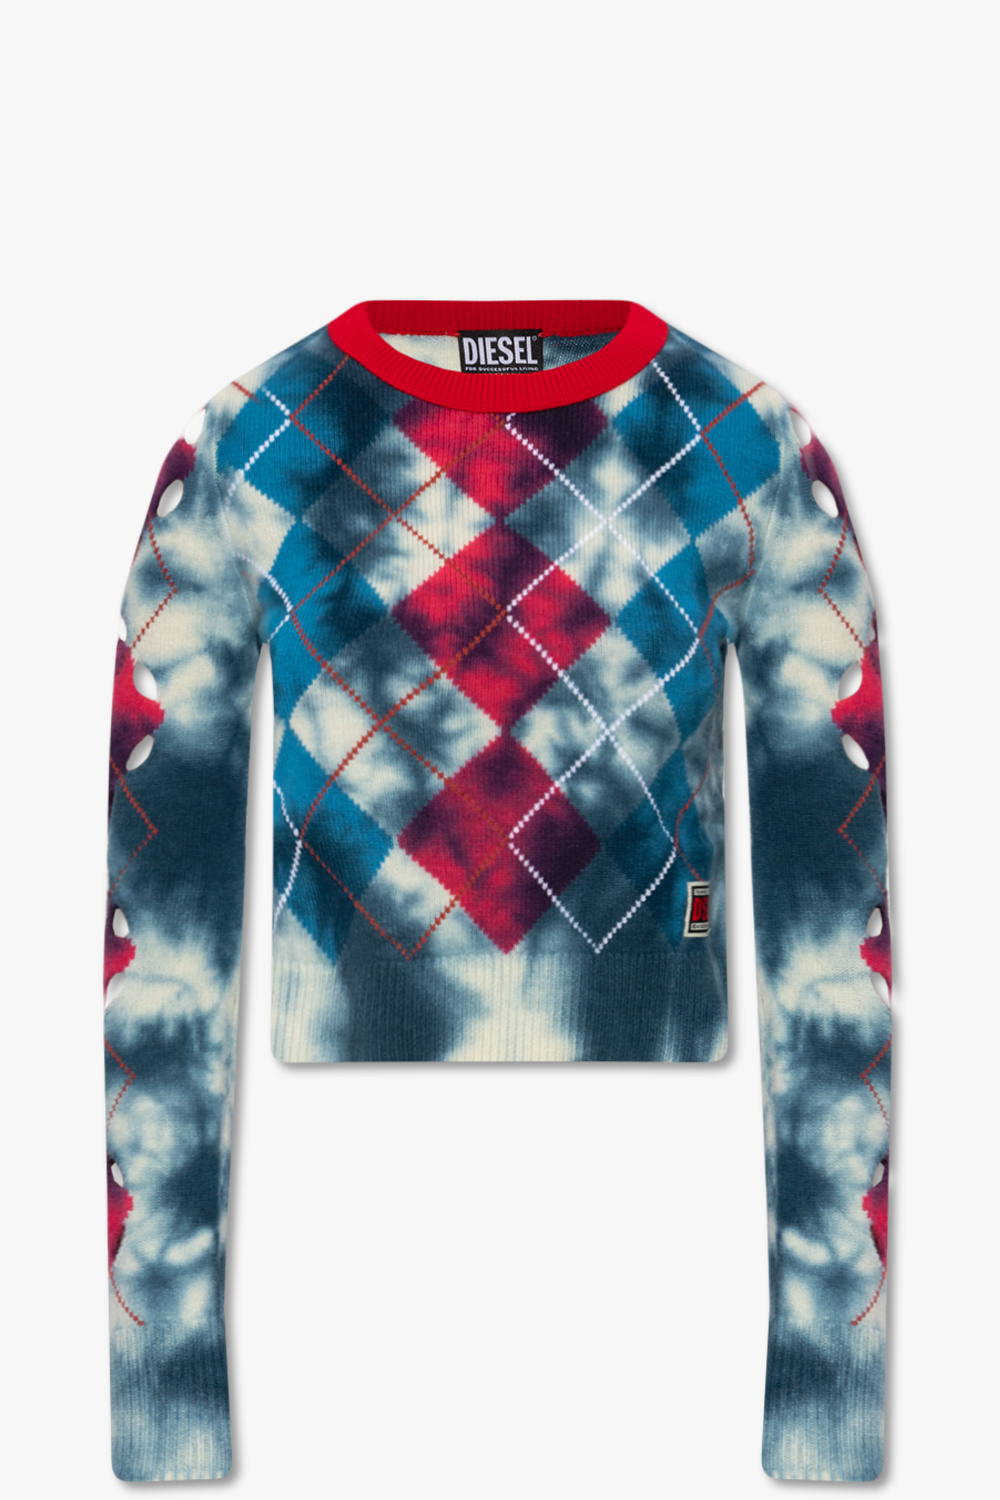 Diesel ‘M-AGDA’ sweater